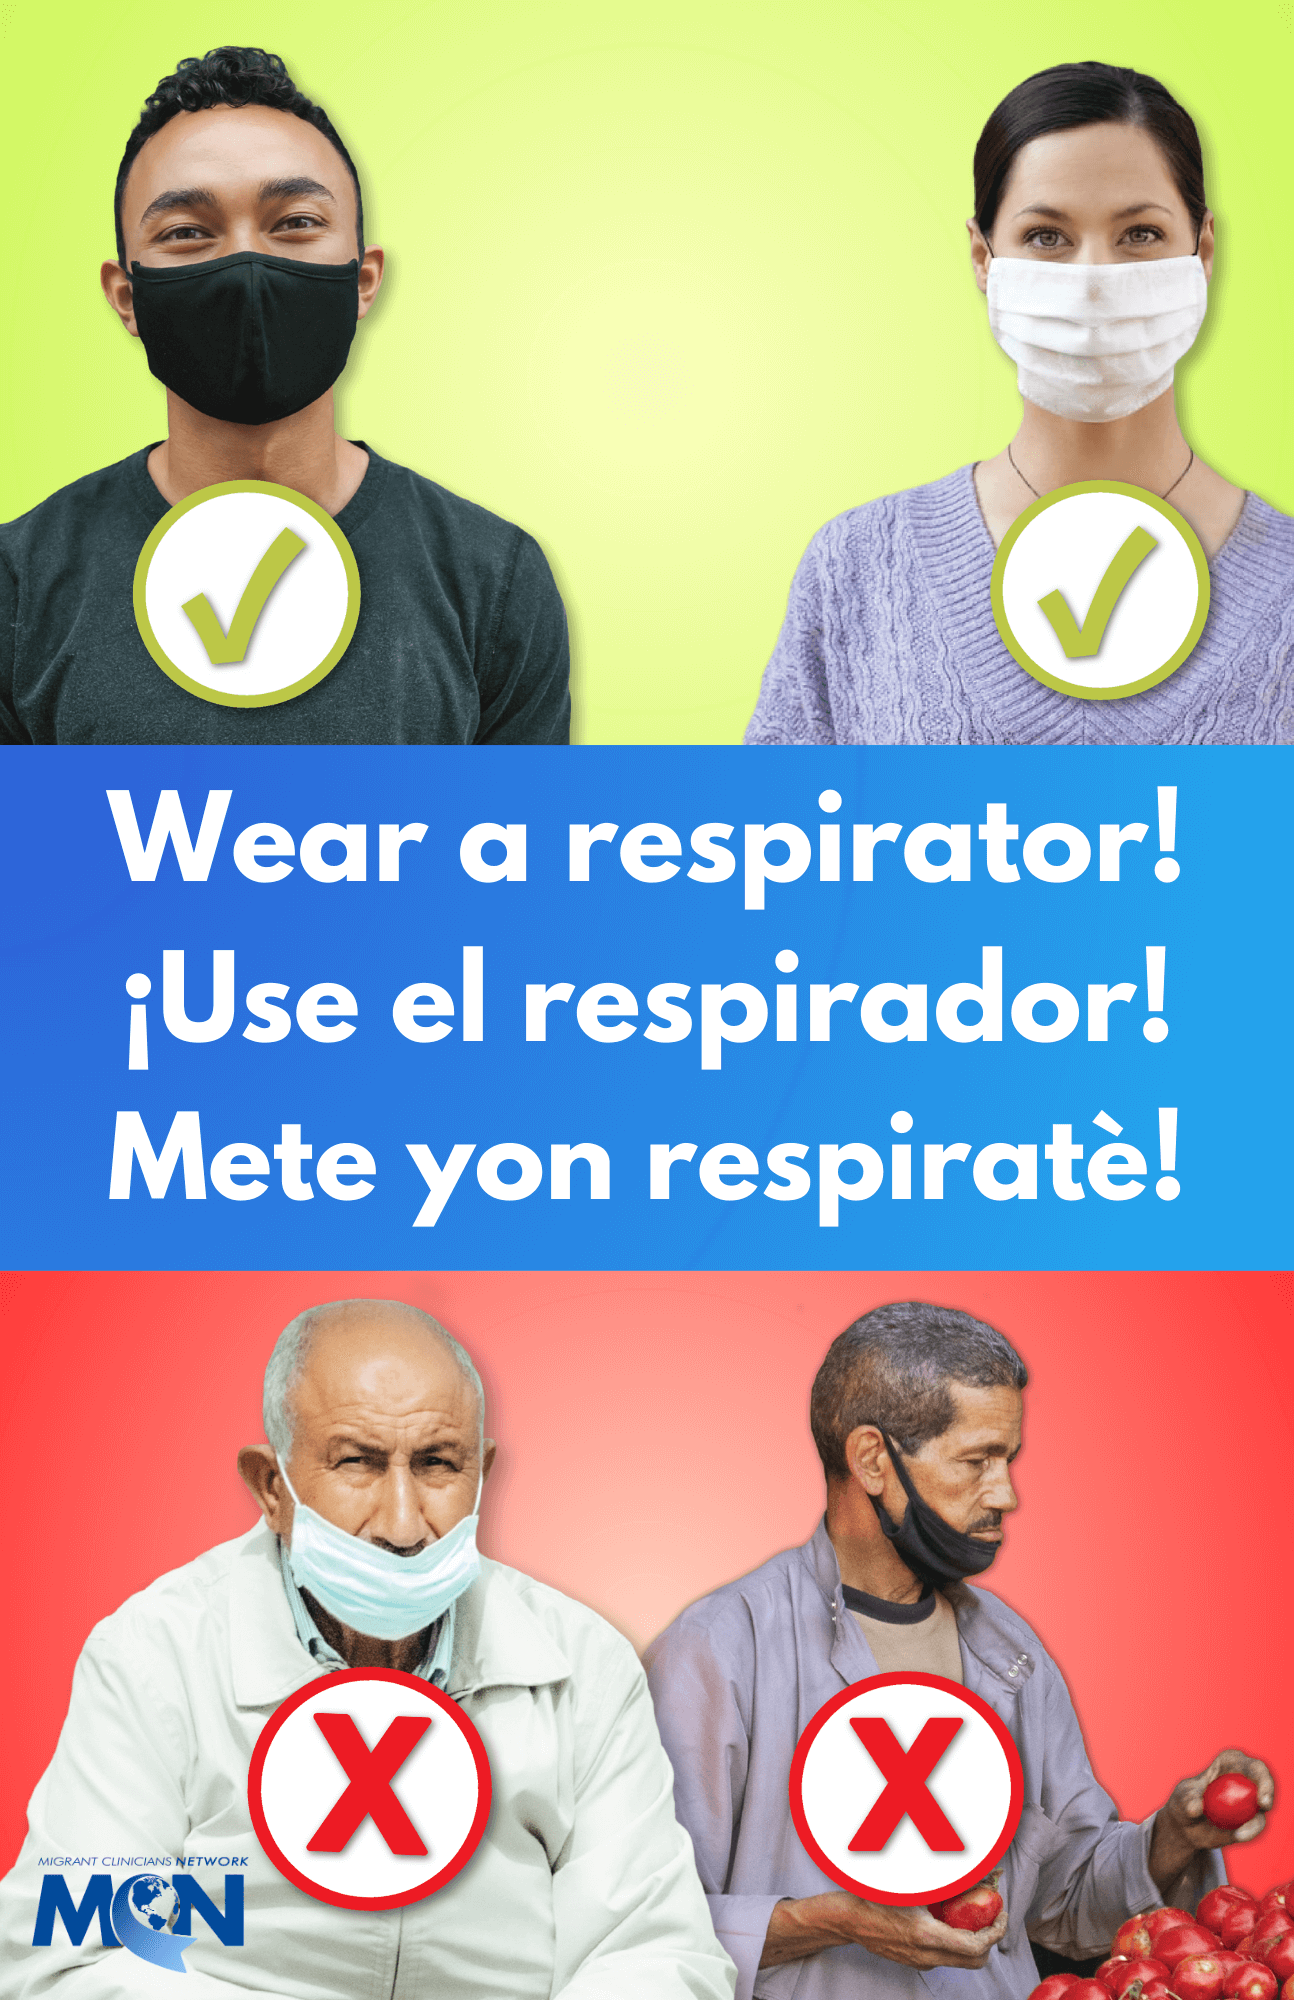 Wear a respirator - poster